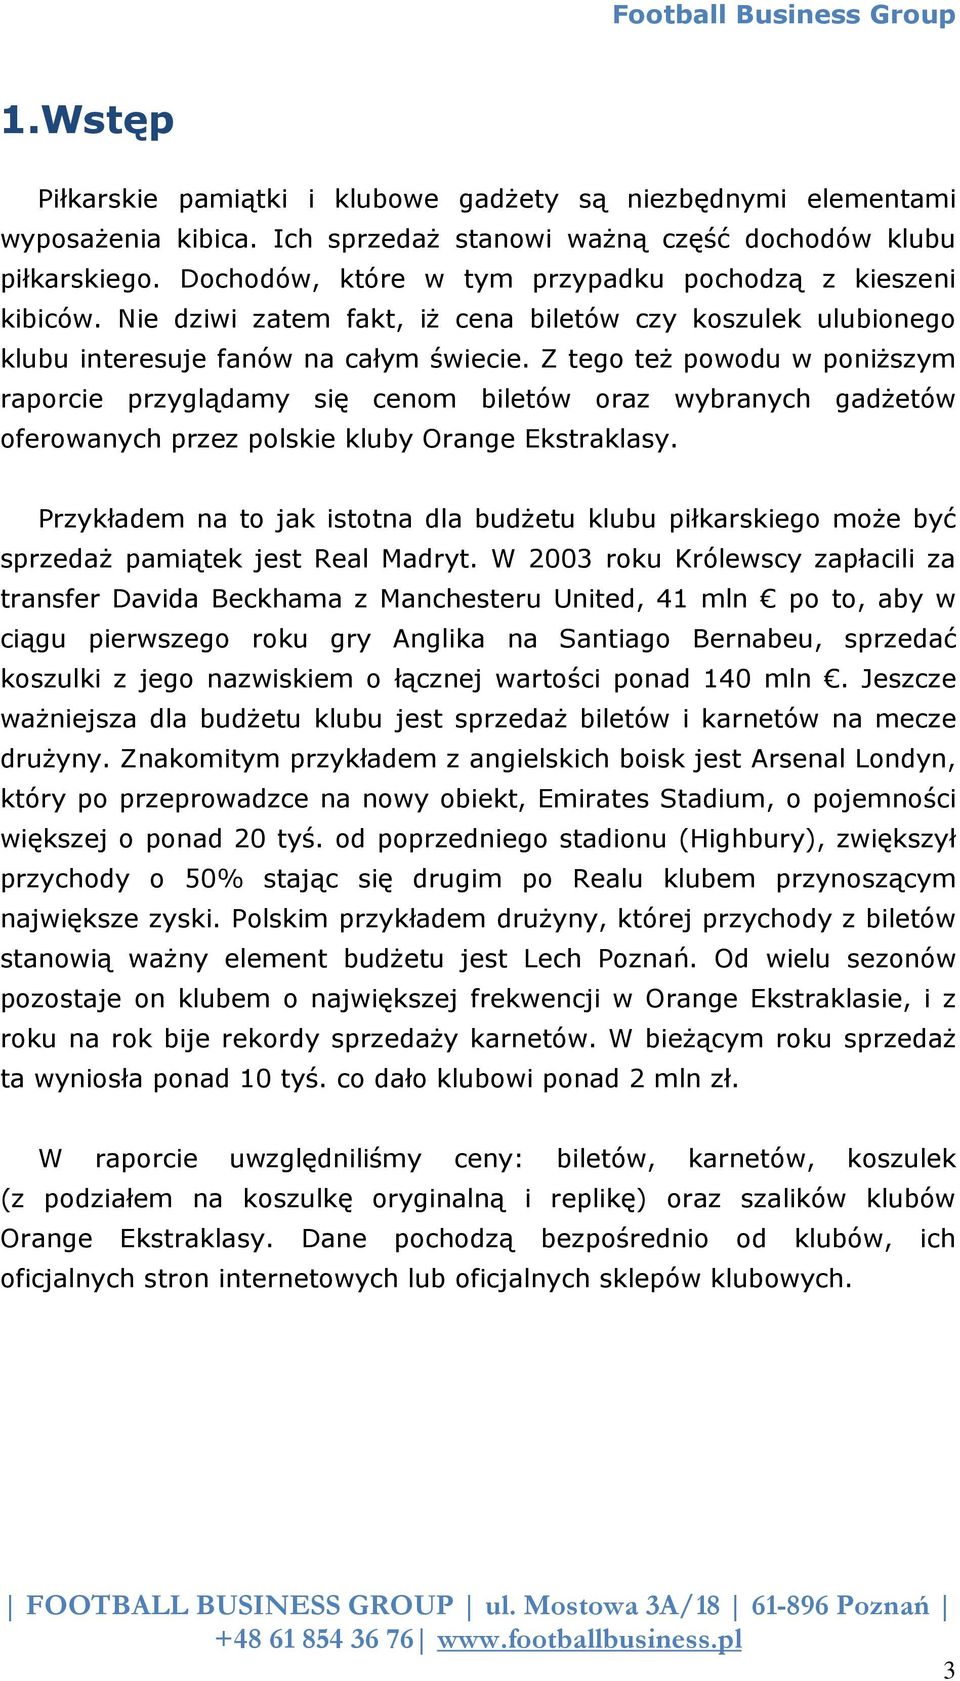 Z tego też powodu w poniższym raporcie przyglądamy się cenom biletów oraz wybranych gadżetów oferowanych przez polskie kluby Orange Ekstraklasy.